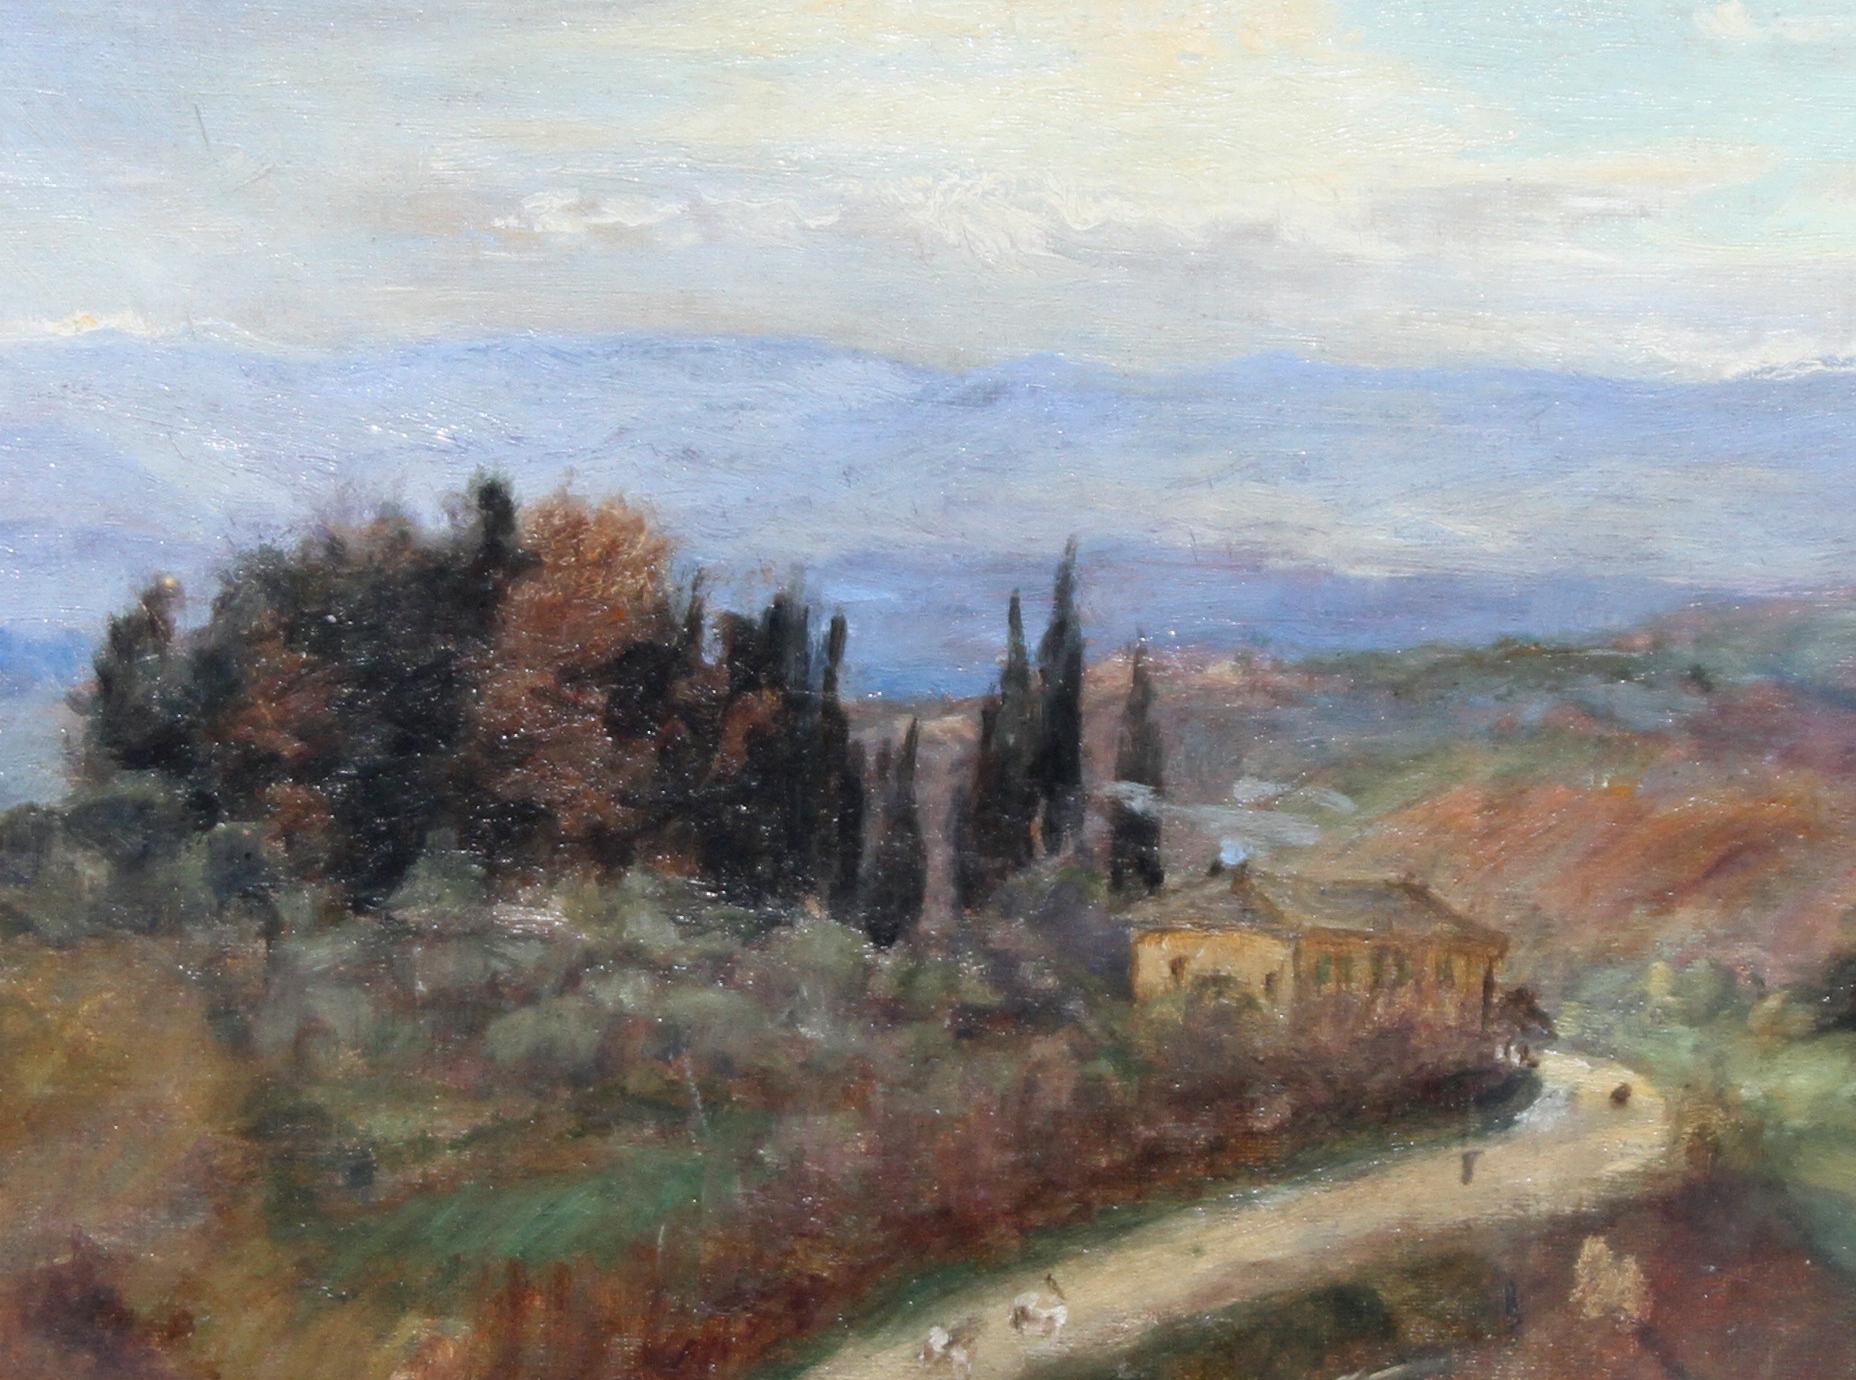 Diese italienische Landschaft ist ein Ölgemälde von Susan Isabel Dacre auf Leinwand, gerahmt hinter Glas in ihrem Original-Galerierahmen. Ein hervorragendes Gemälde, gemalt um 1888. Dacre war ein frühes Mitglied der feministischen Bewegung und der